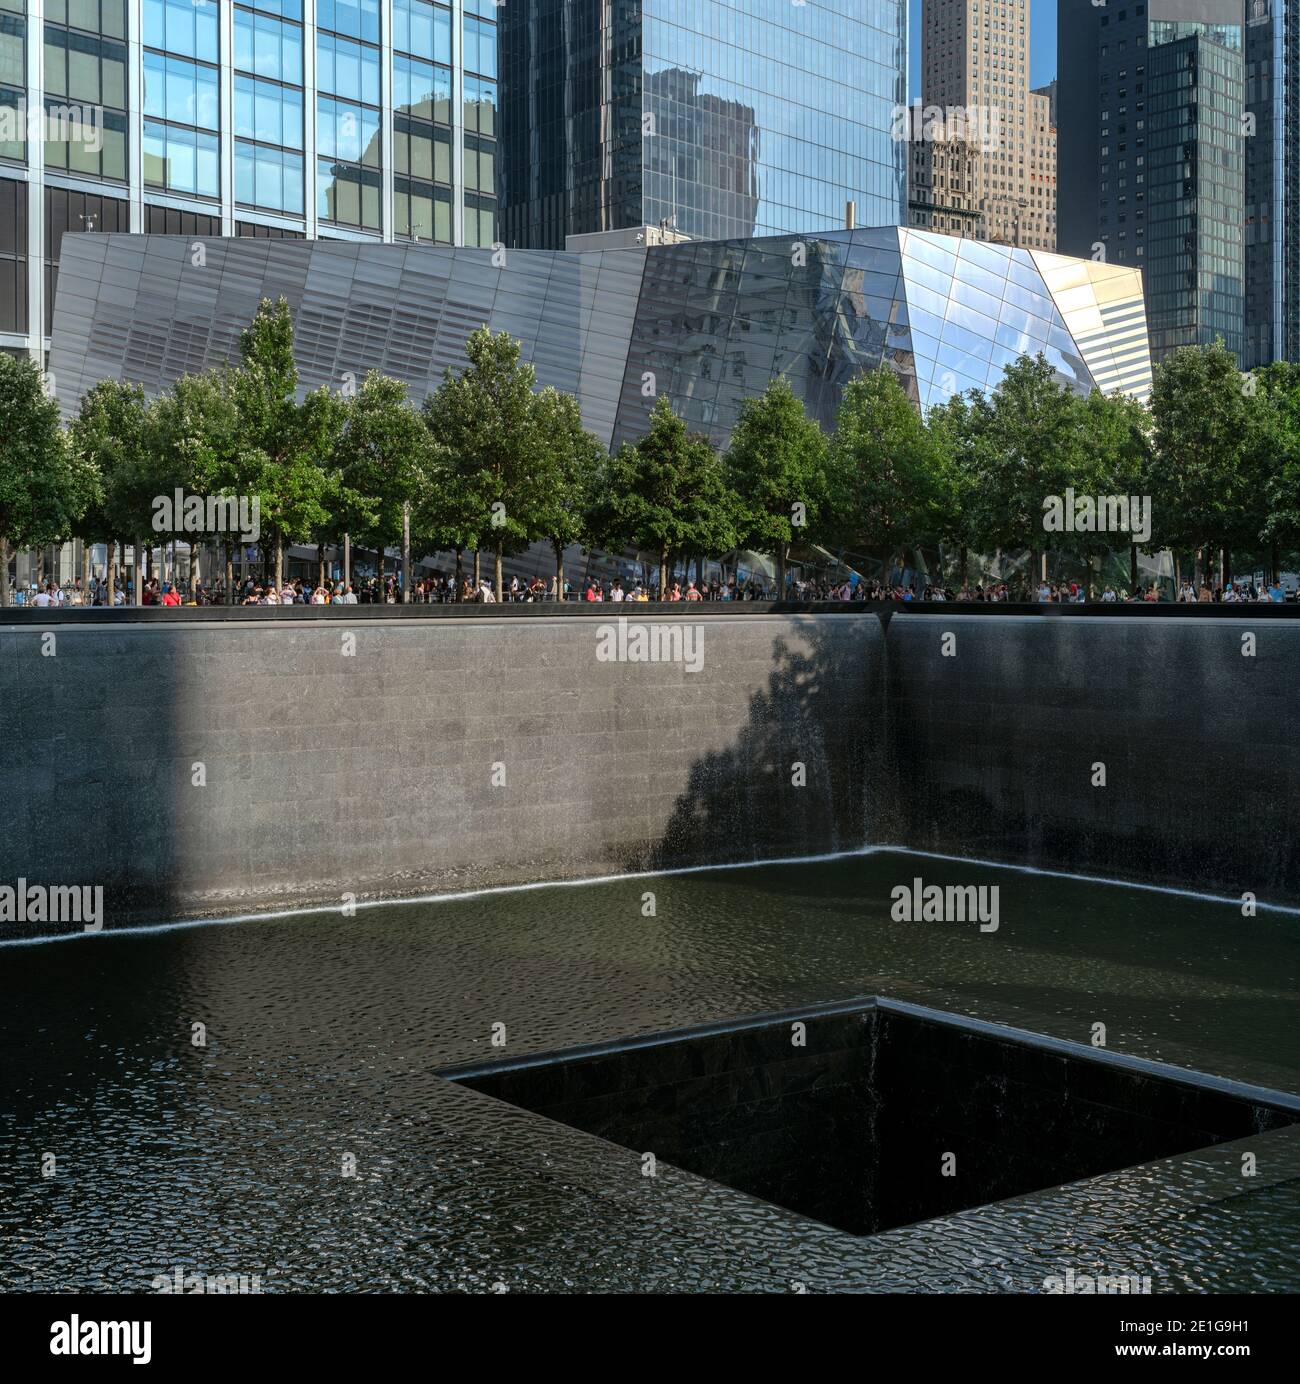 National septembre 11 Memorial & Museum, New York, États-Unis. Terminé en 2011. Banque D'Images